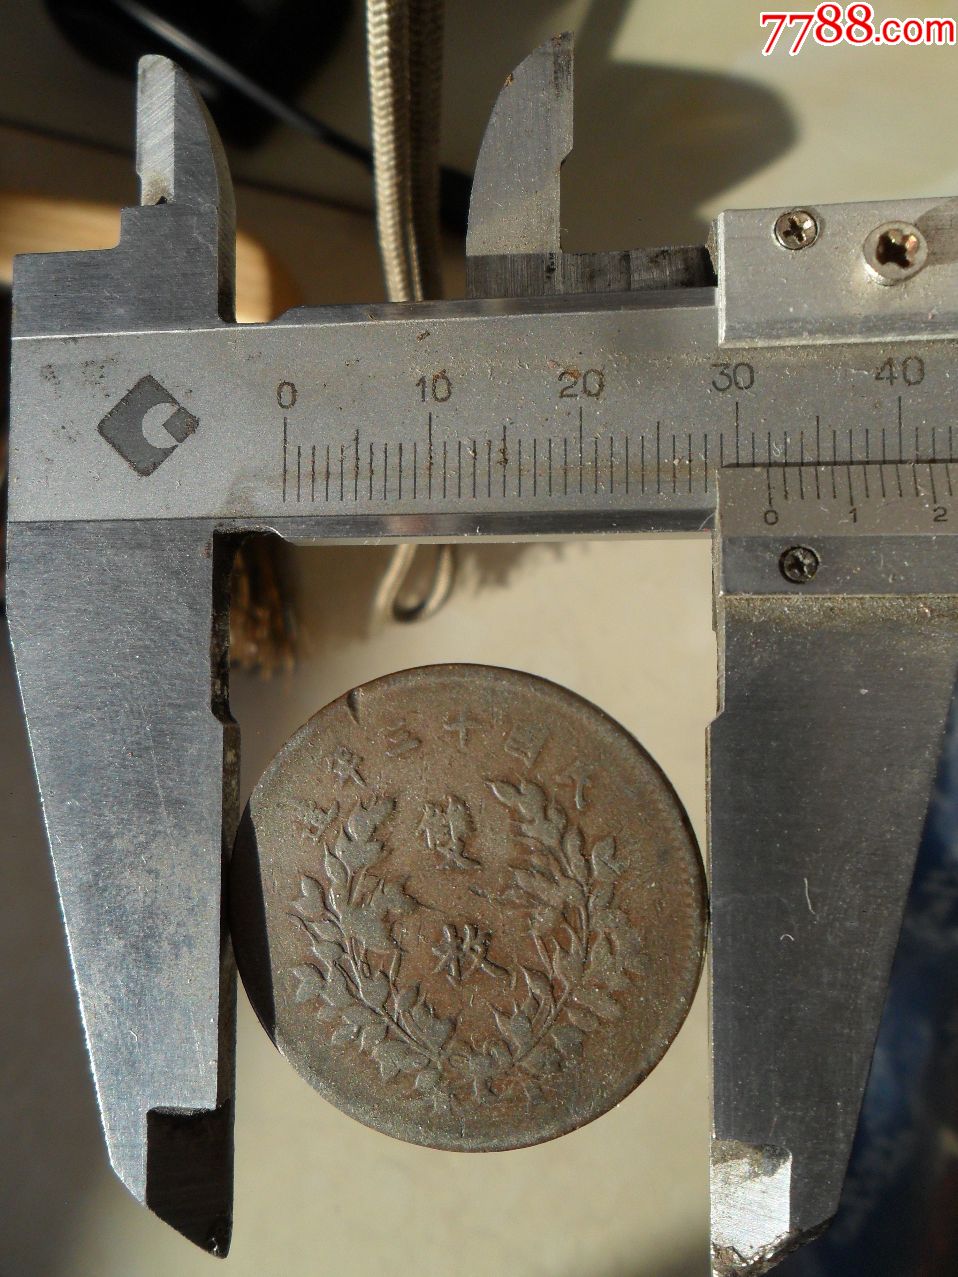 中华铜币双枚32毫米1个